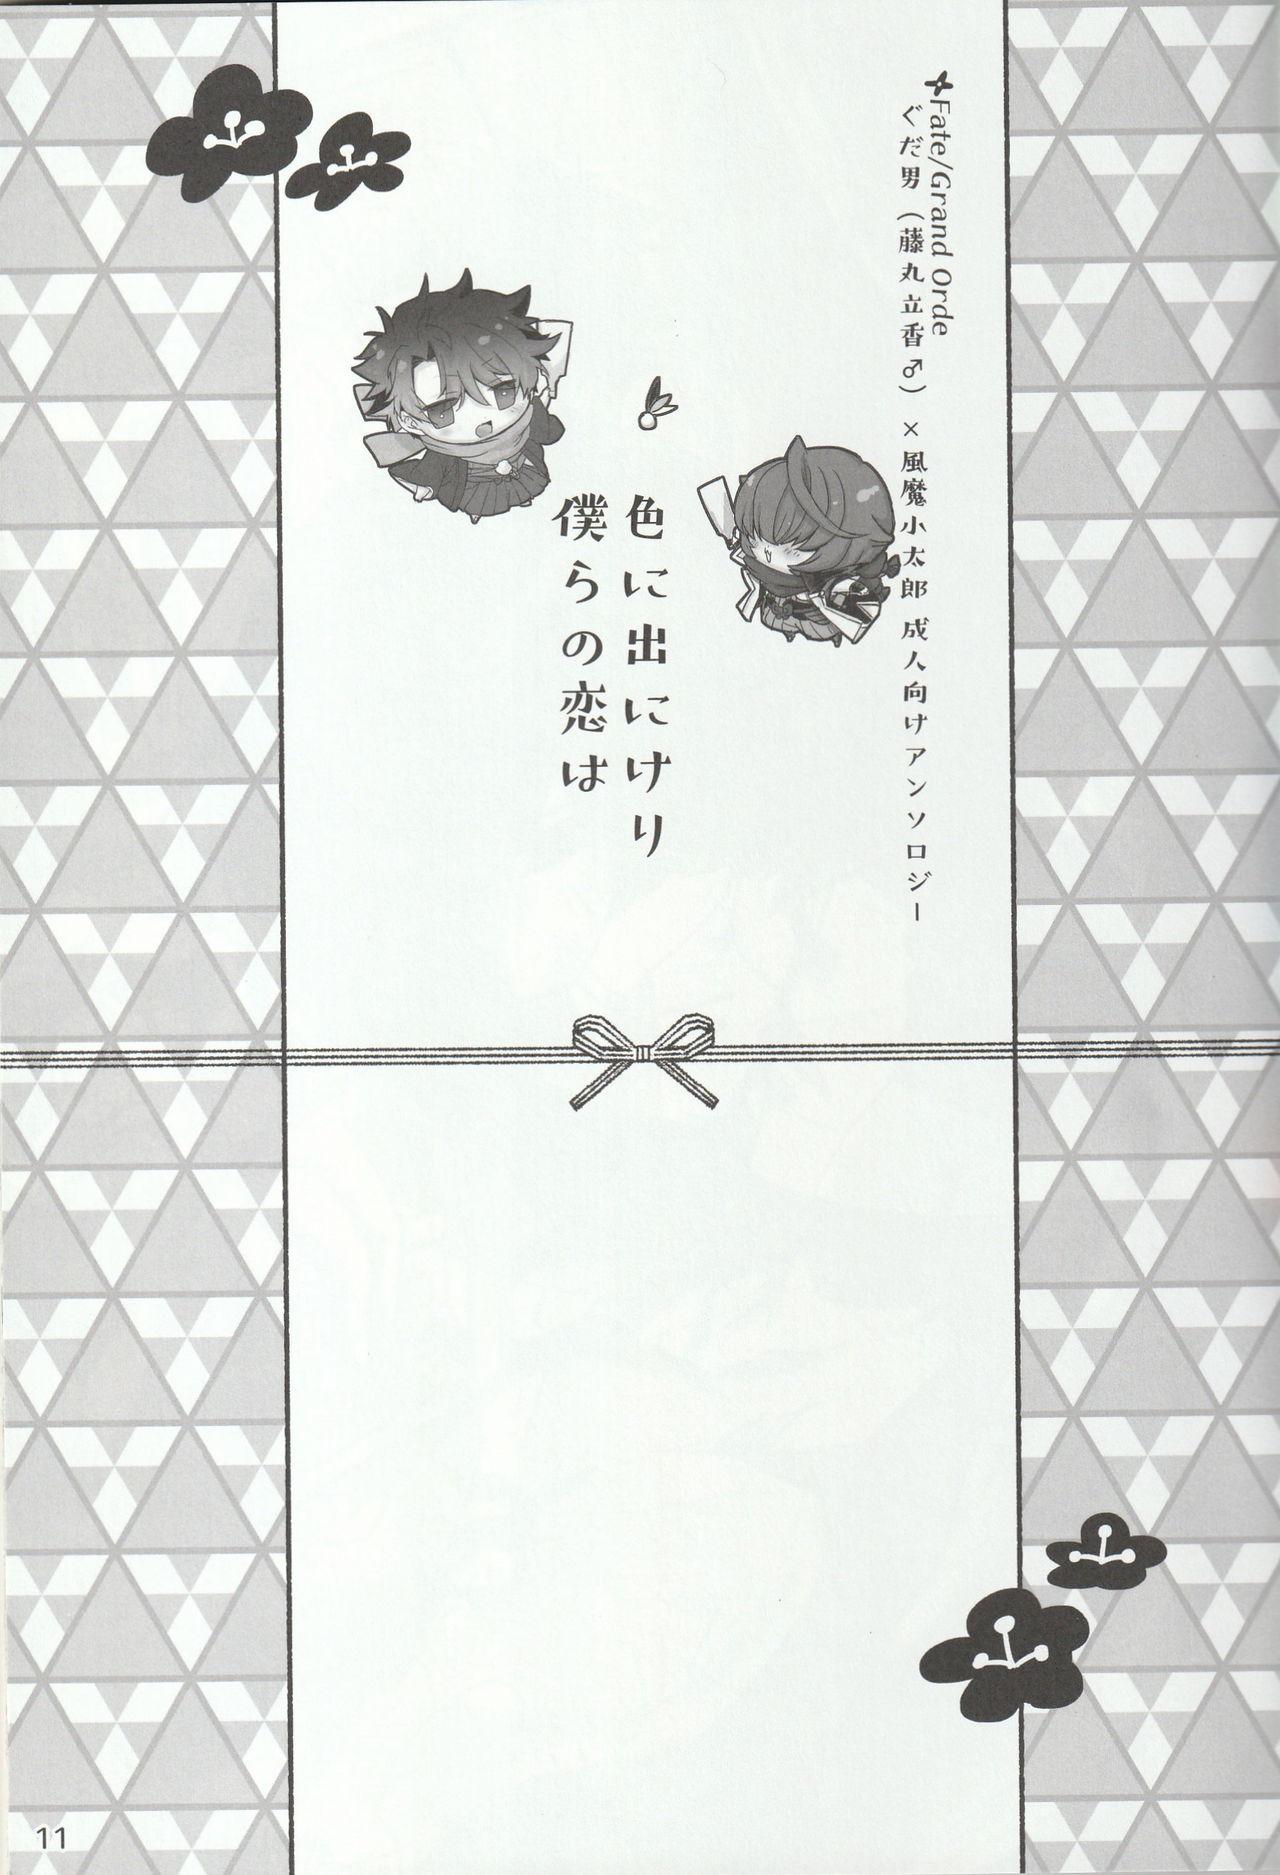 Brunet Iro ni Deni keri Bokura no Koi wa - Fate grand order Daring - Page 11